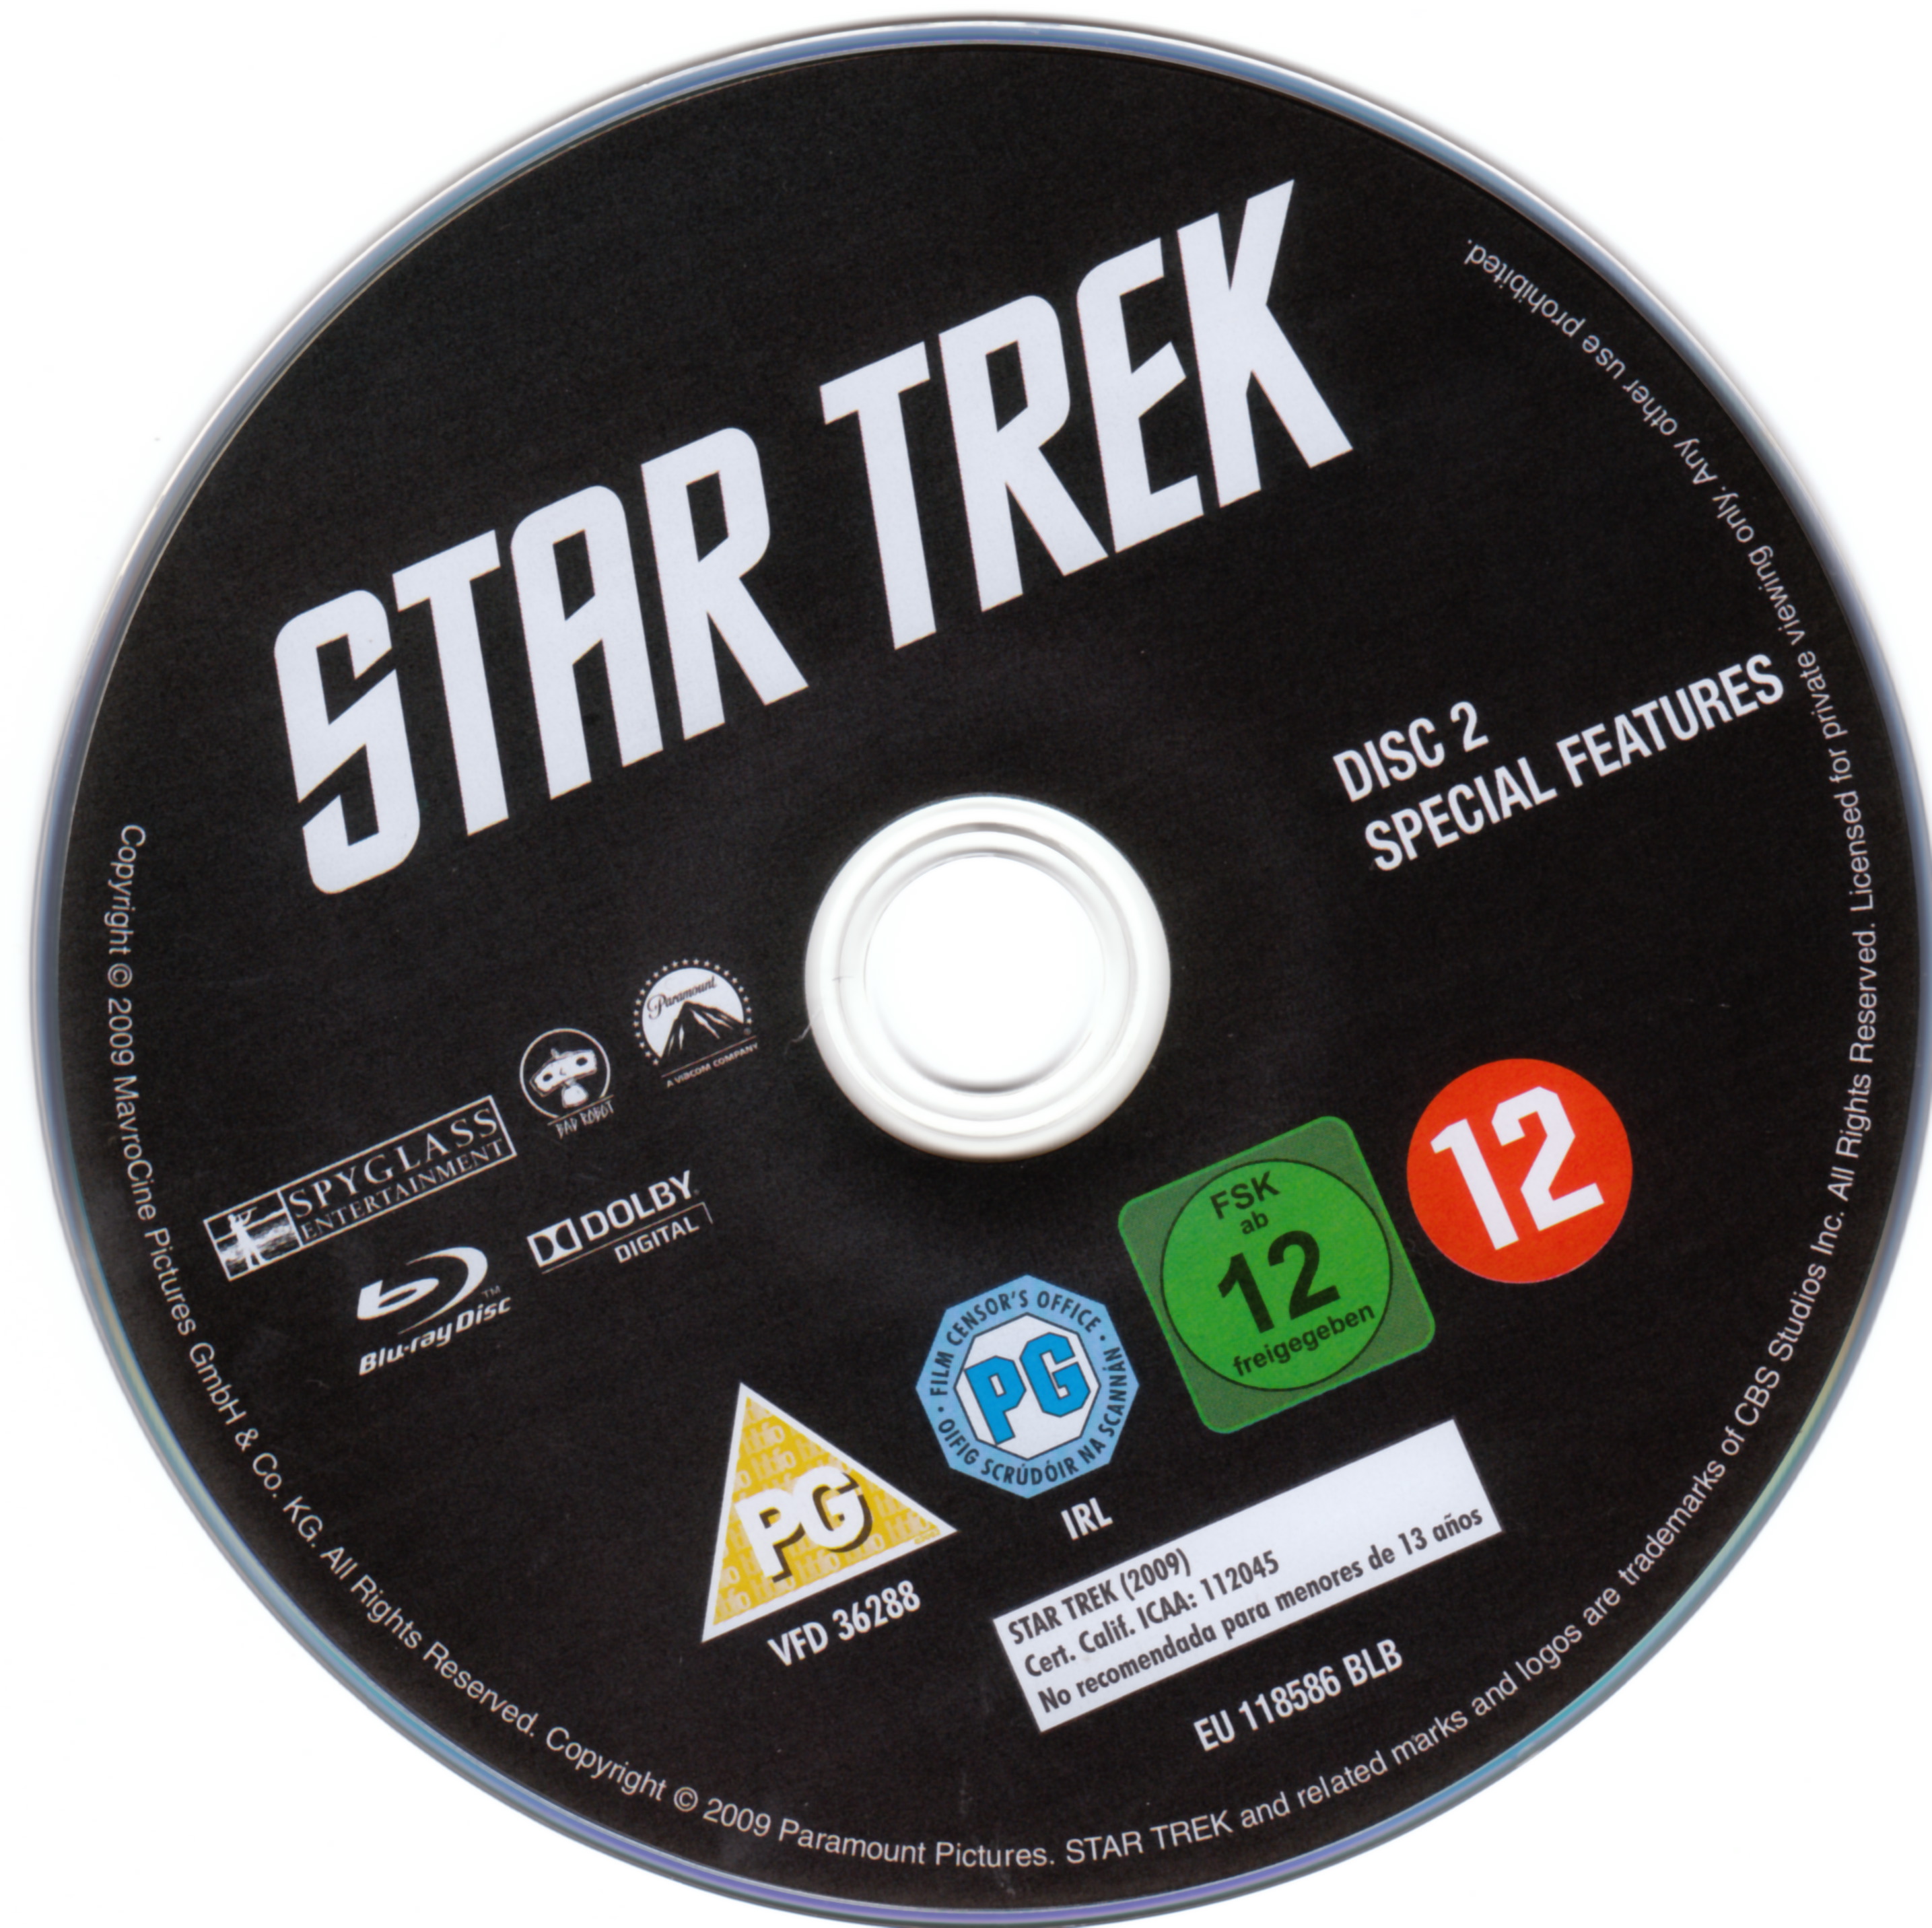 Star trek (2009) (BLU-RAY) DISC 2